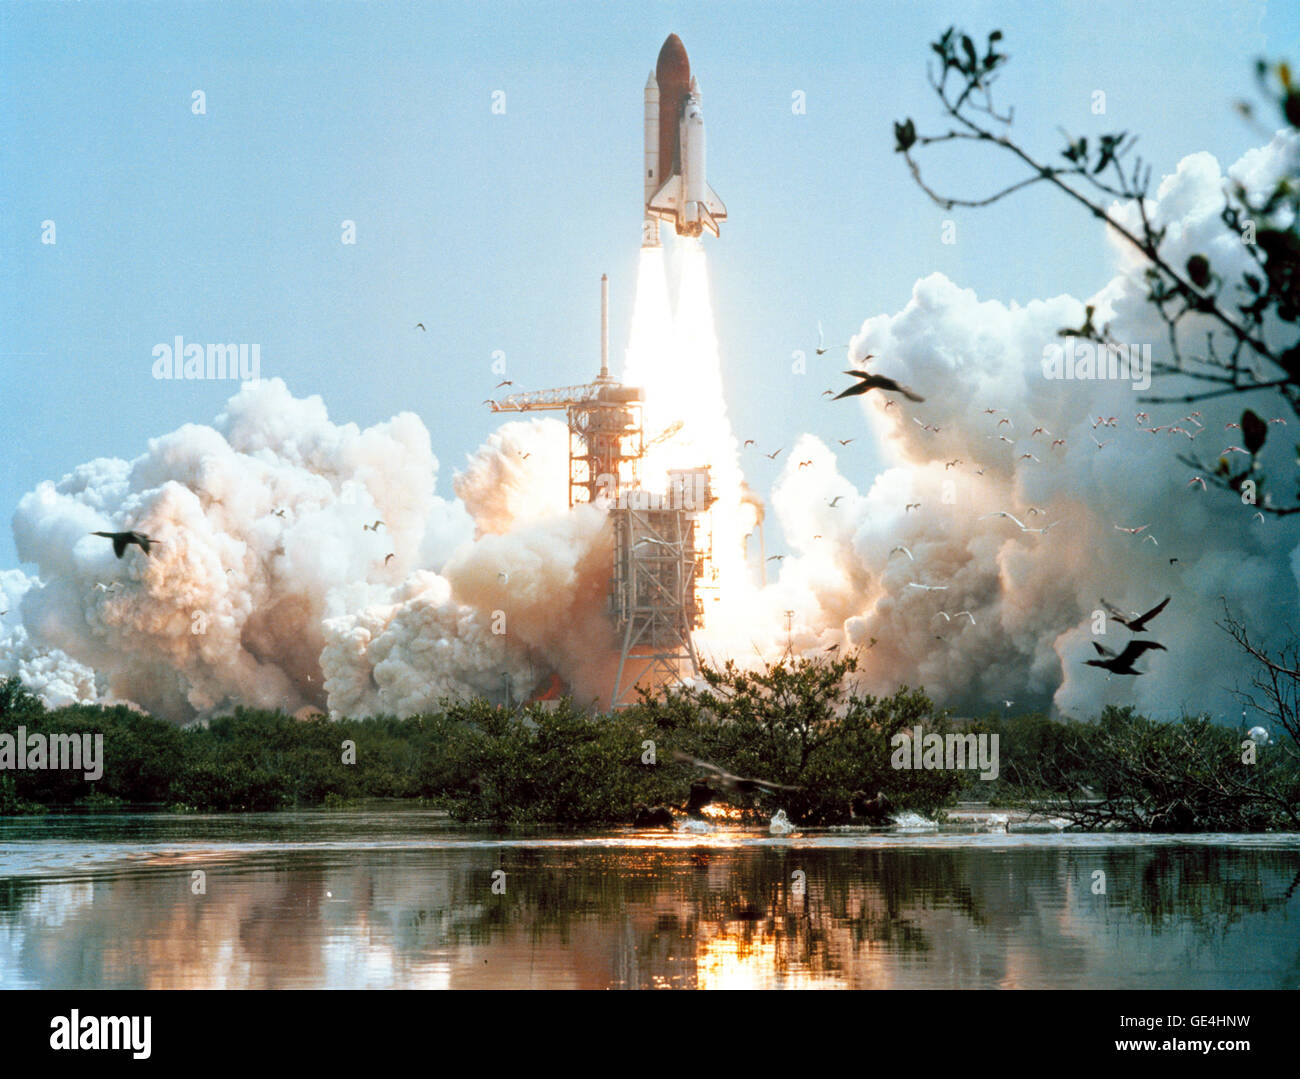 (27 giugno 1982) Space Shuttle Columbia's STS-4 missione lanciato dal Kennedy Space Center il 27 giugno 1982. La missione è stata la prova finale per il volo per il programma navetta. Immagine # : S82-33288 Foto Stock